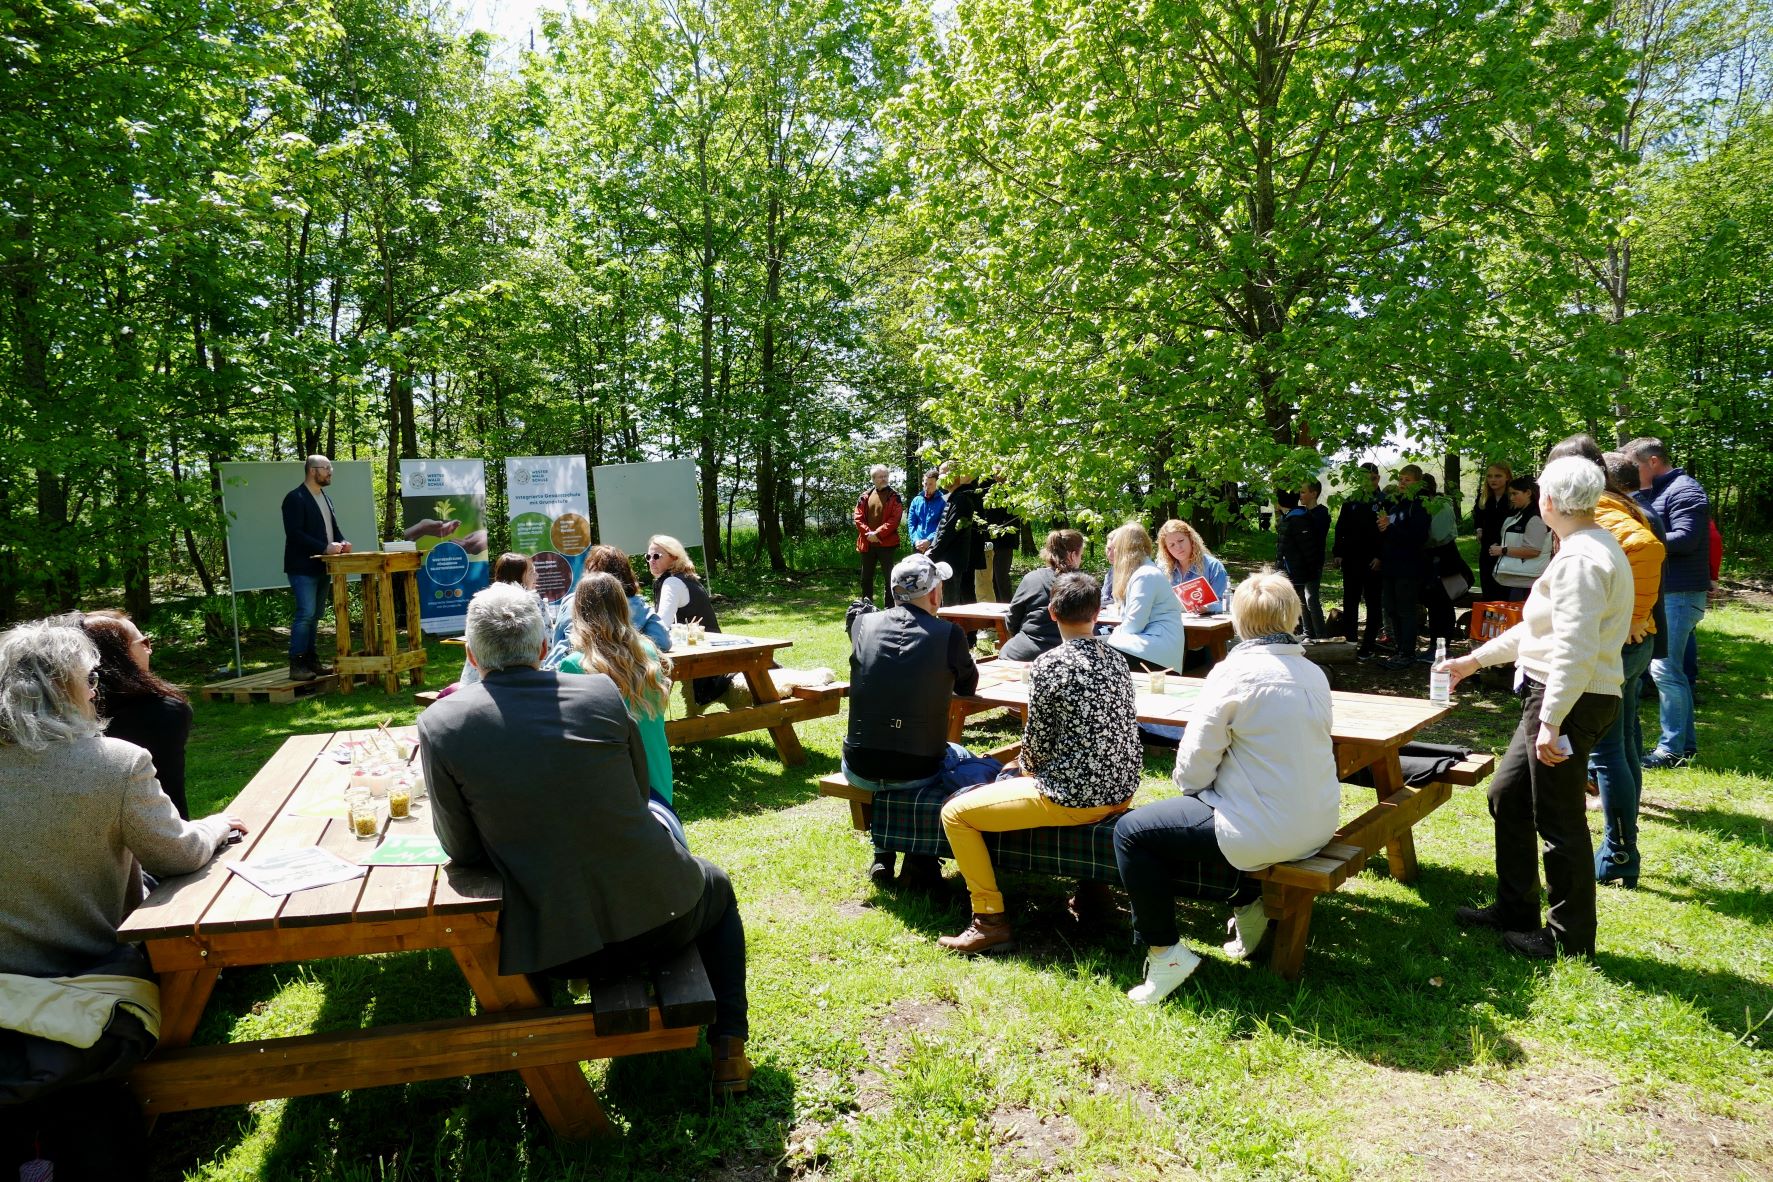 Das "Waldklassenzimmer" ist eine Fläche im Wald mit Holzstühlen und -tischen. Die verschiedenen Akteurinnen und Akteure der Preisverleihung sind im Waldklassenzimmer verteilt und unterhalten sich miteinander.